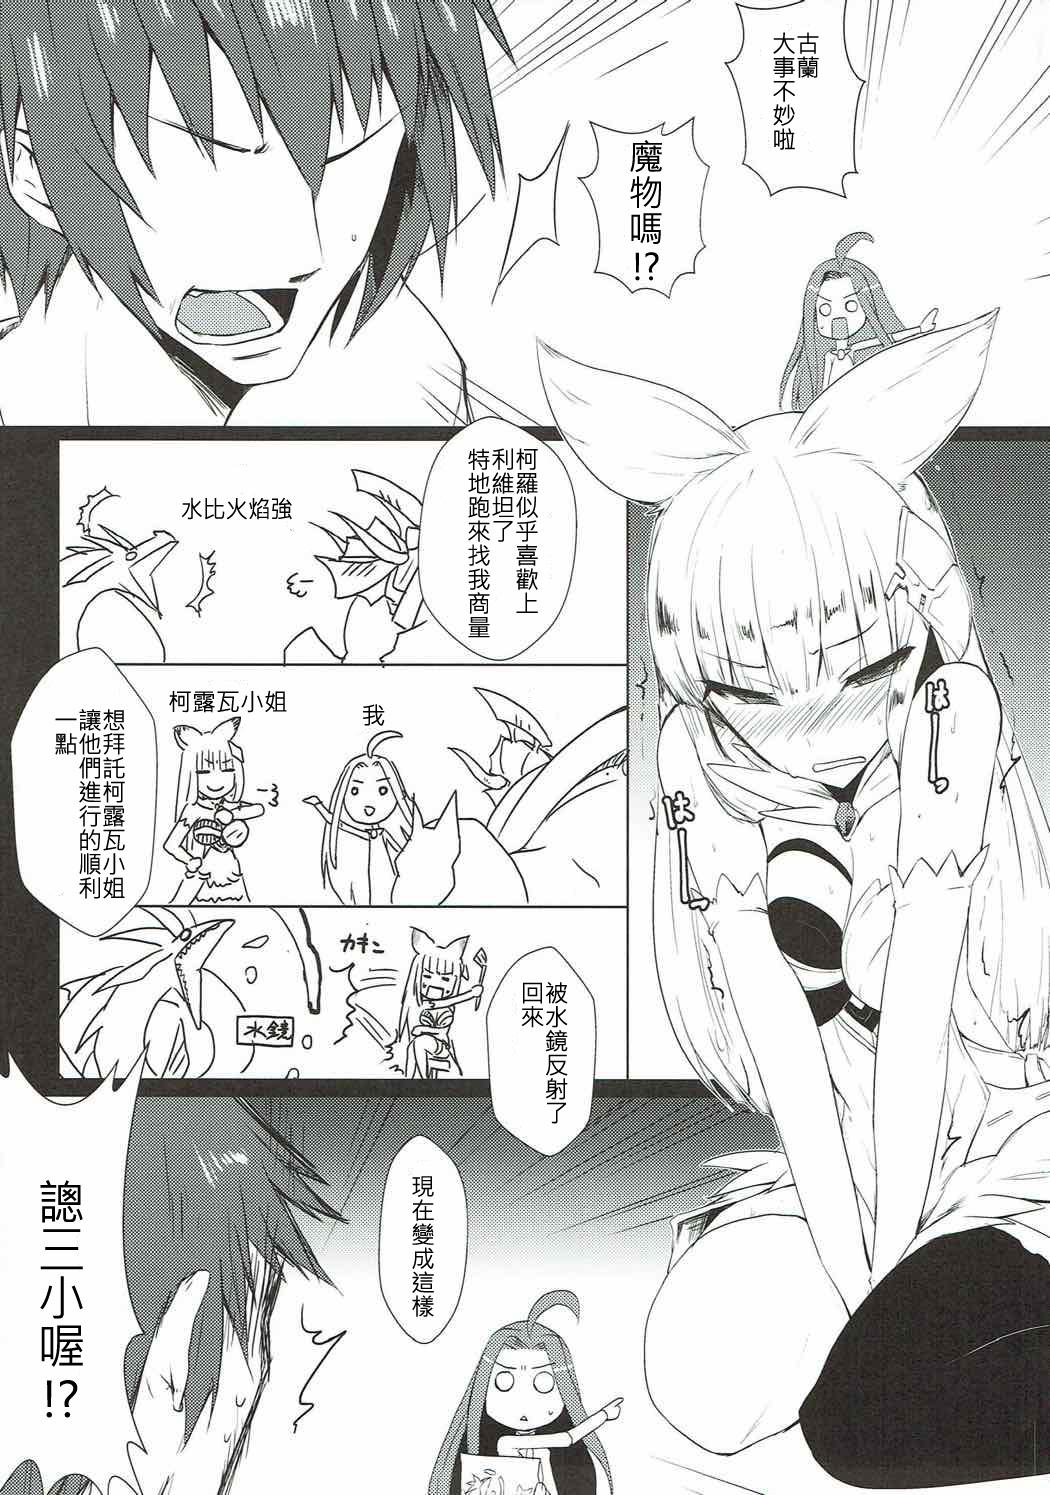 Gozada Jibaku desu yo!! Korwa-san! - Granblue fantasy Amatures Gone Wild - Page 3